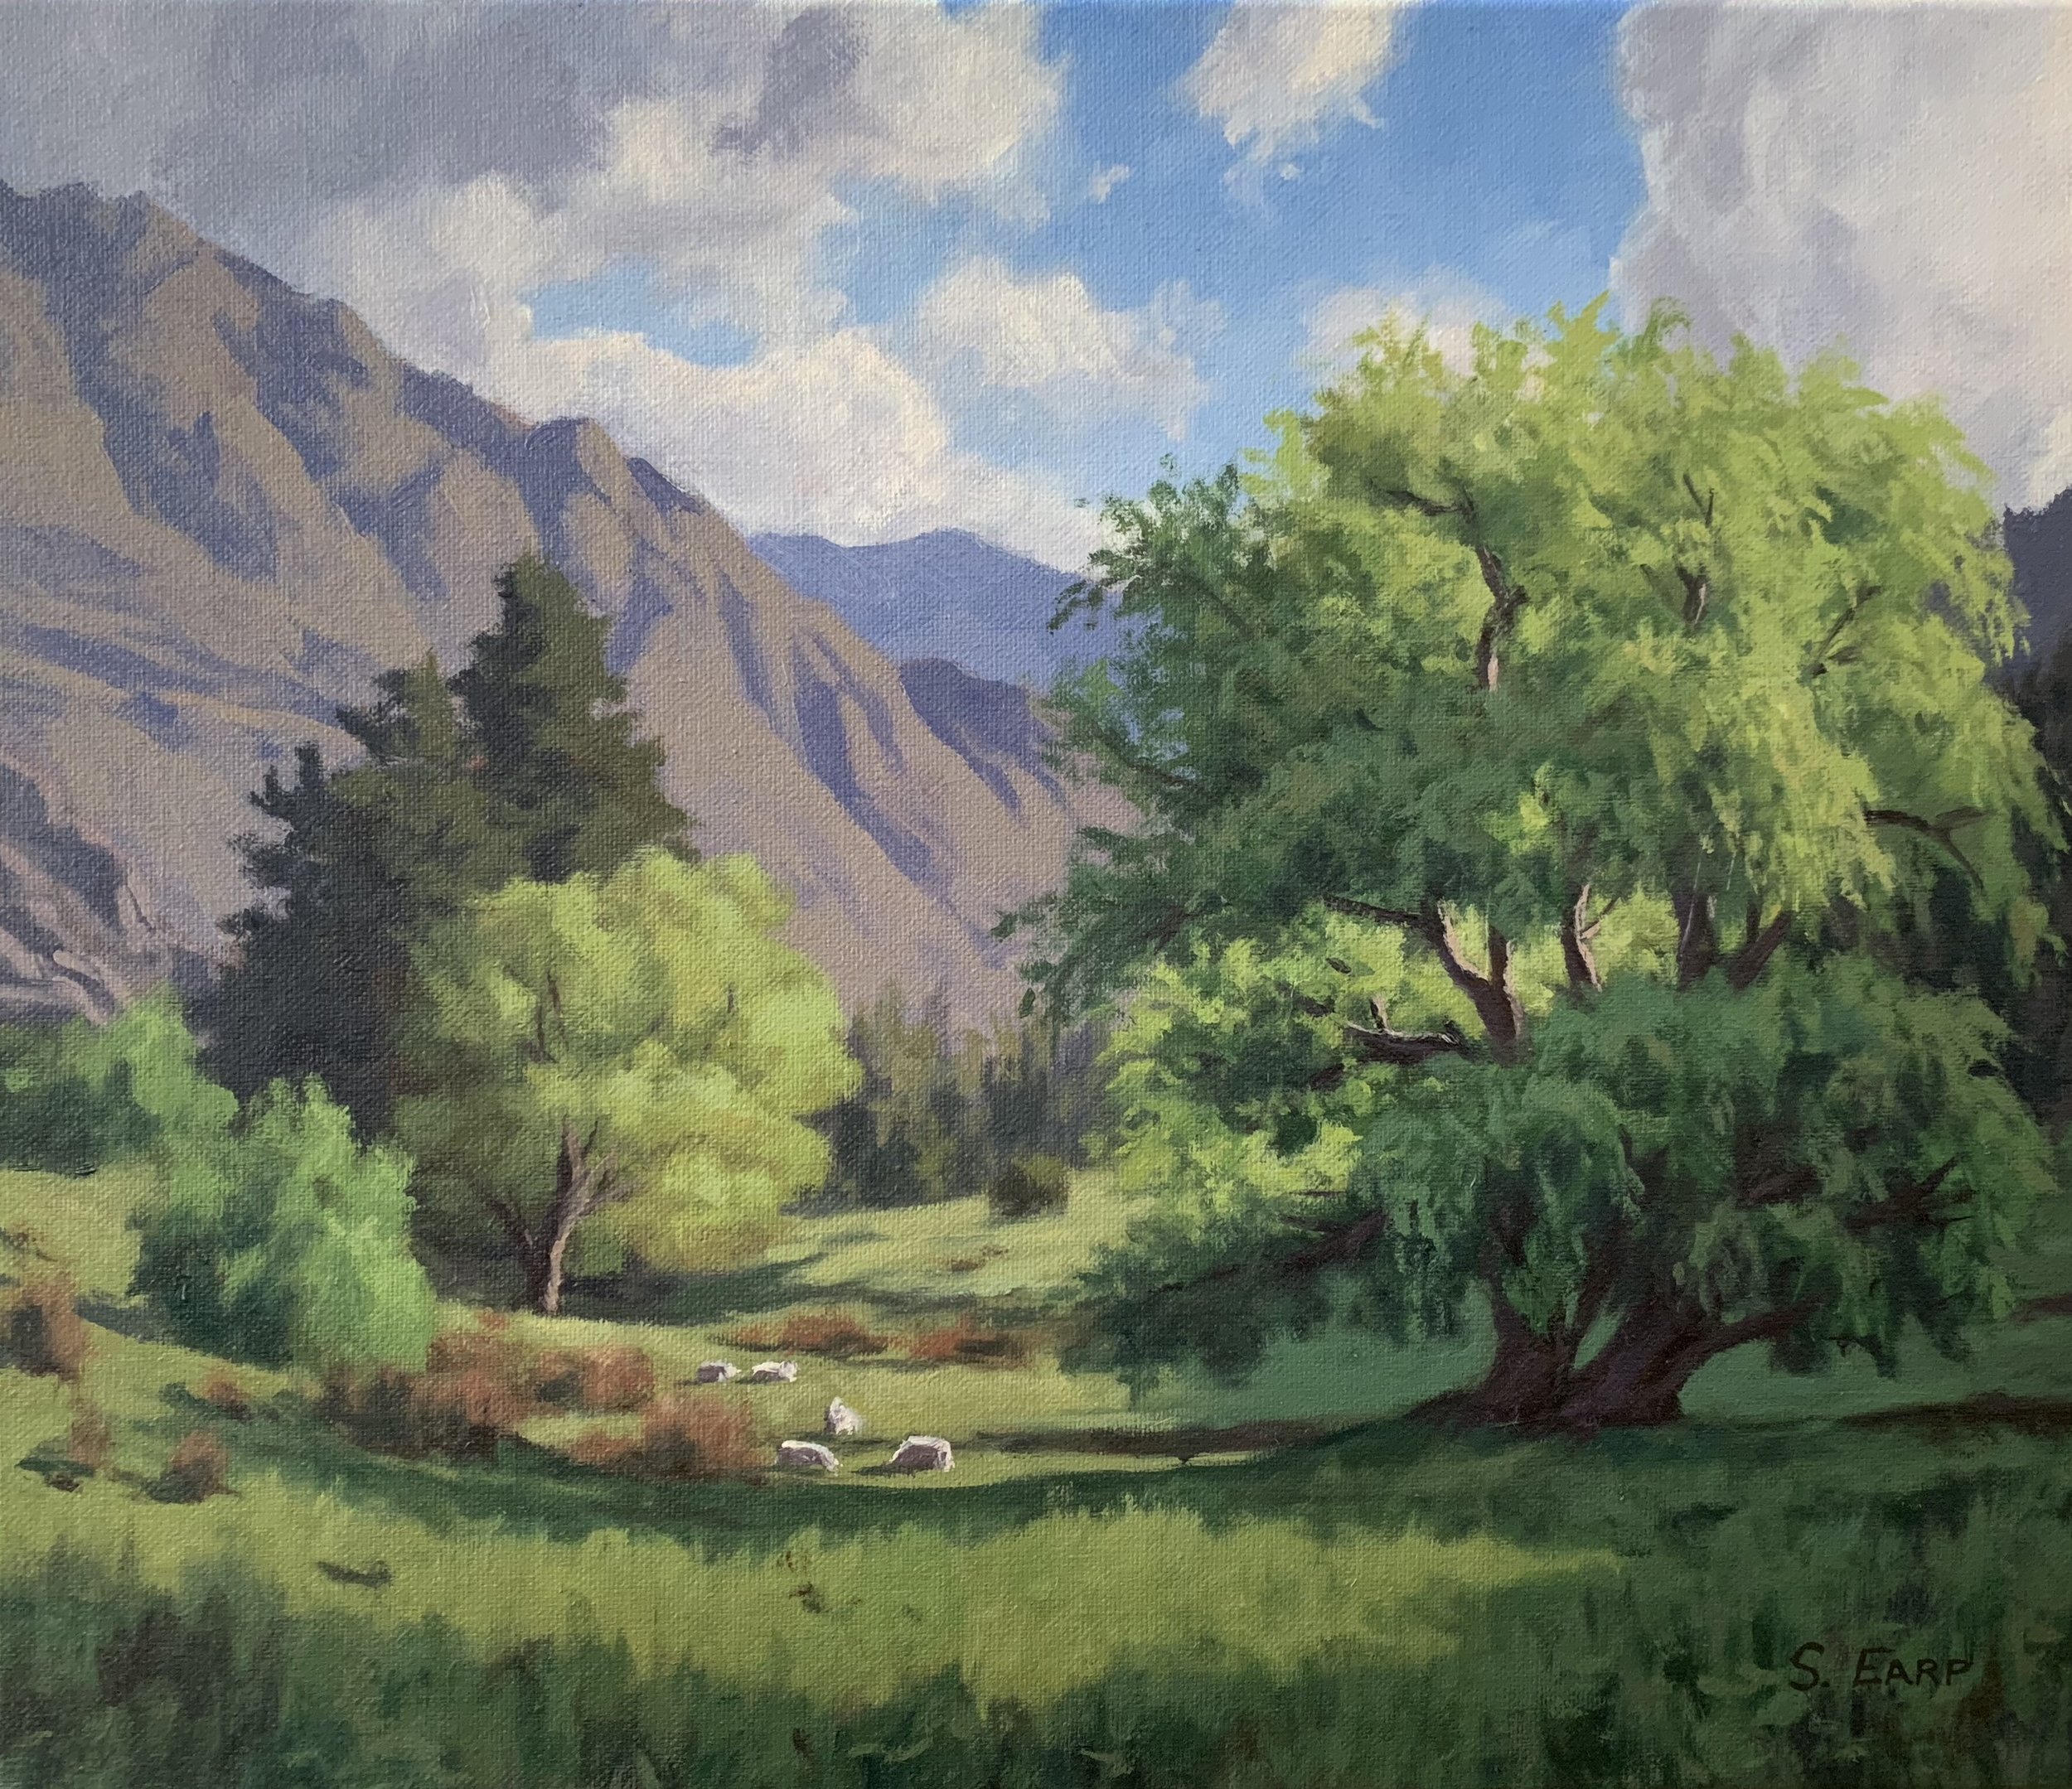 Willow Trees and Light - oil painting - Samuel Earp - landscape artist.jpg